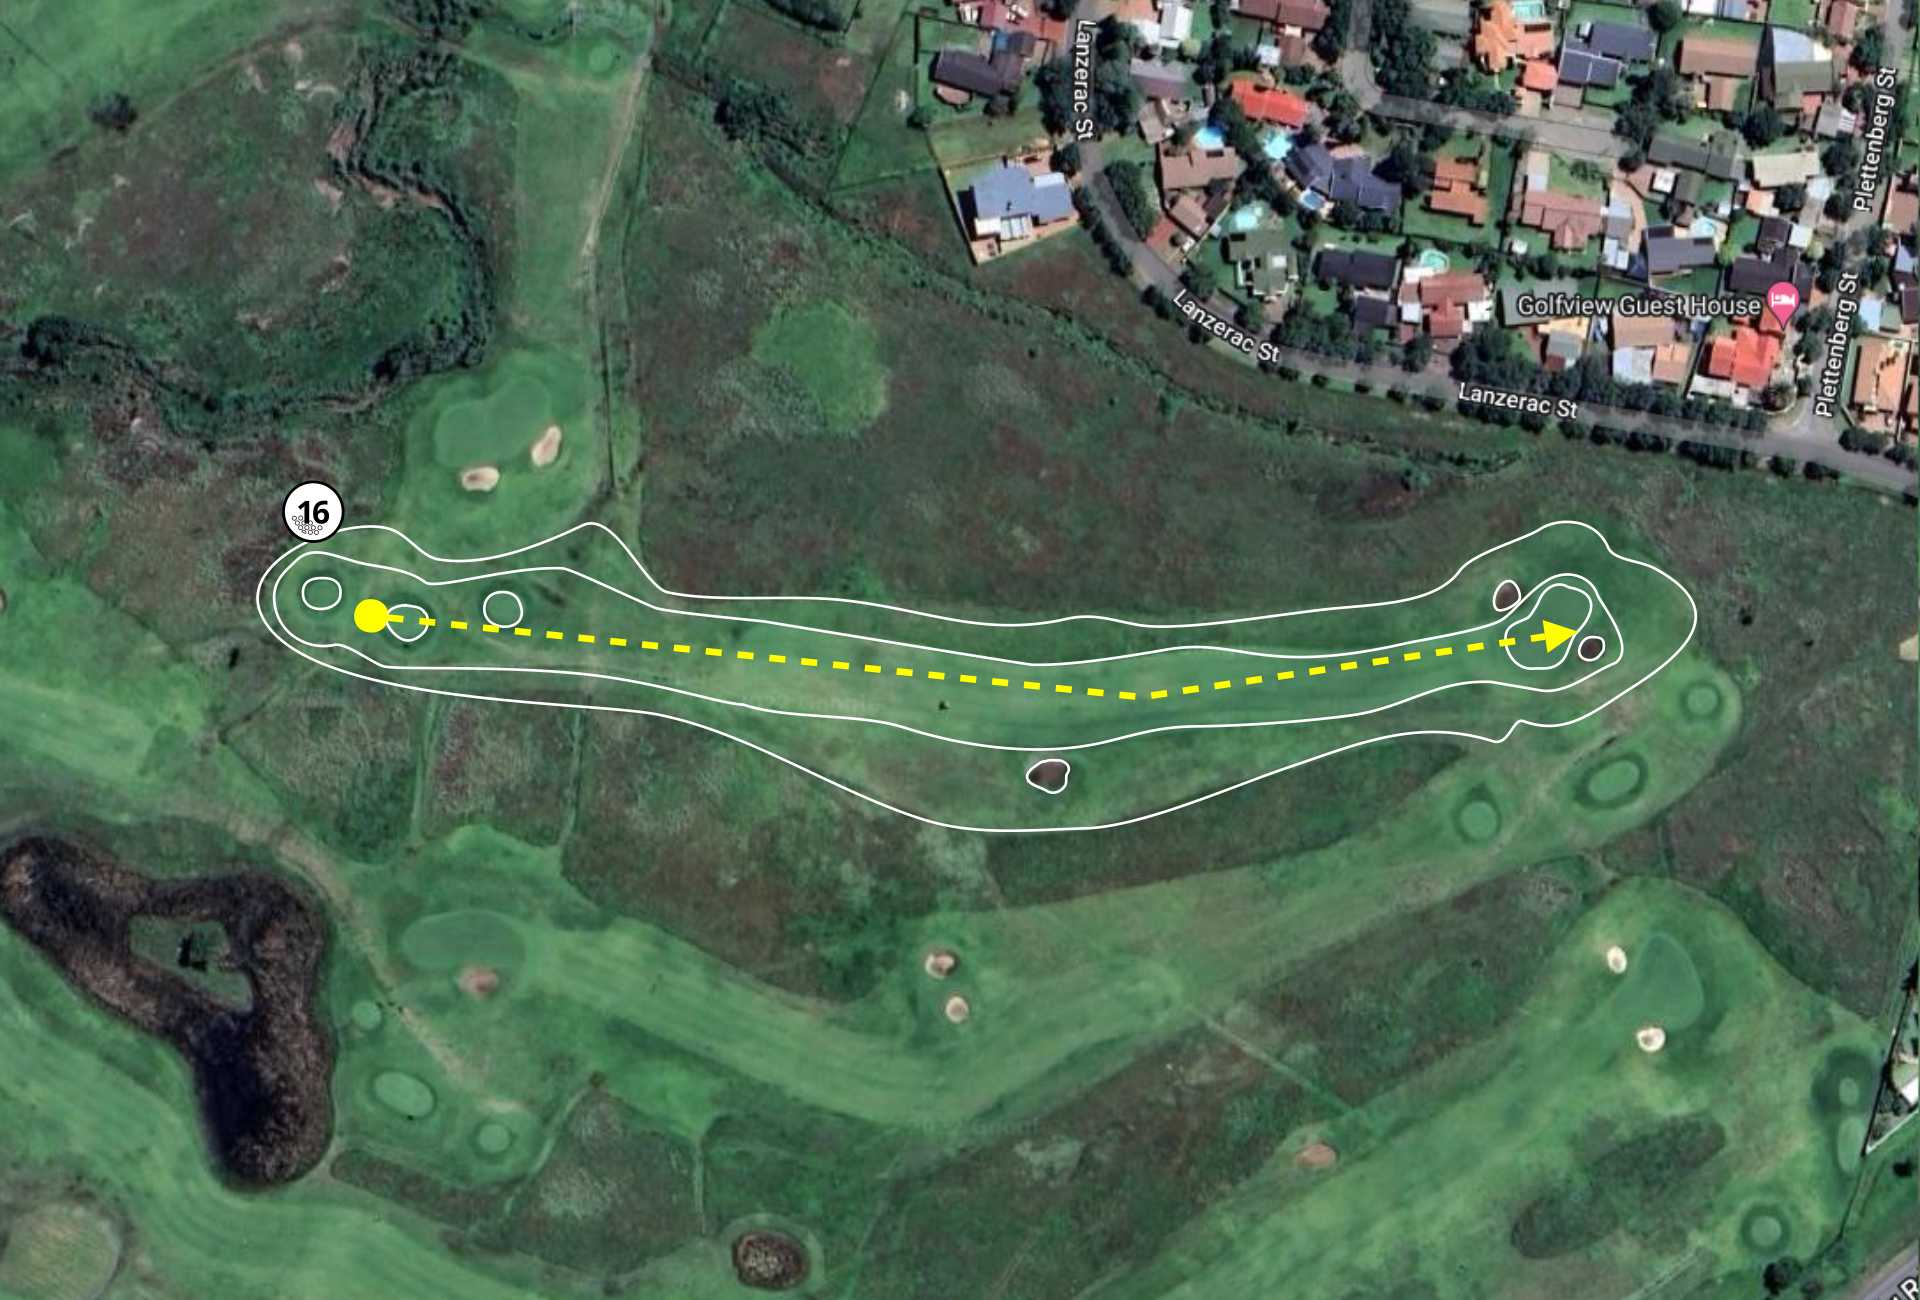 Graceland Golf Course Hole 16 layout